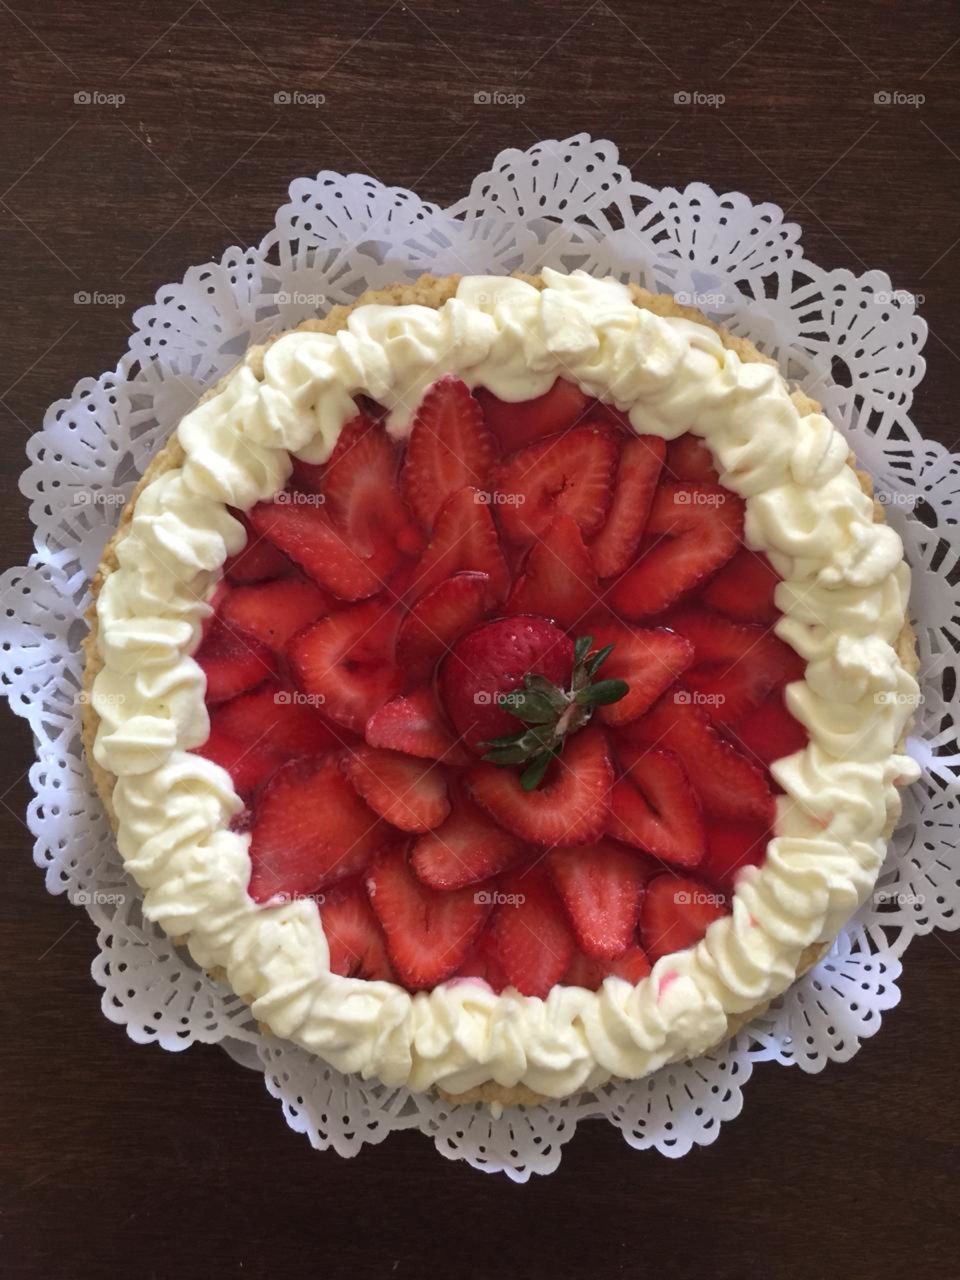 hermosos colores de esta tarta de frutilla espero que disfruten la foto